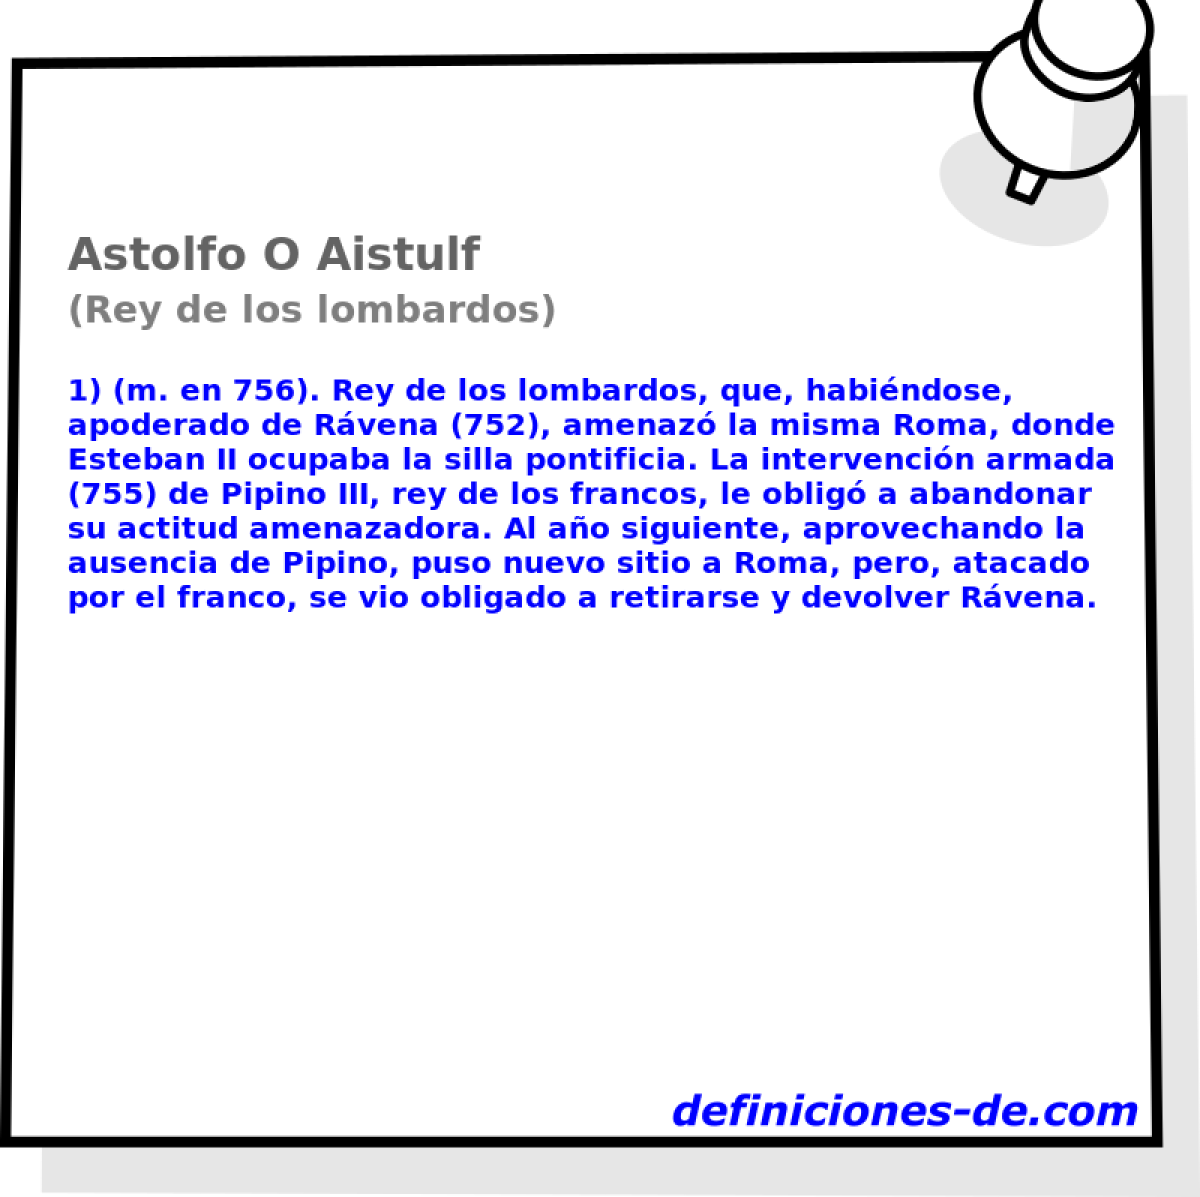 Astolfo O Aistulf (Rey de los lombardos)